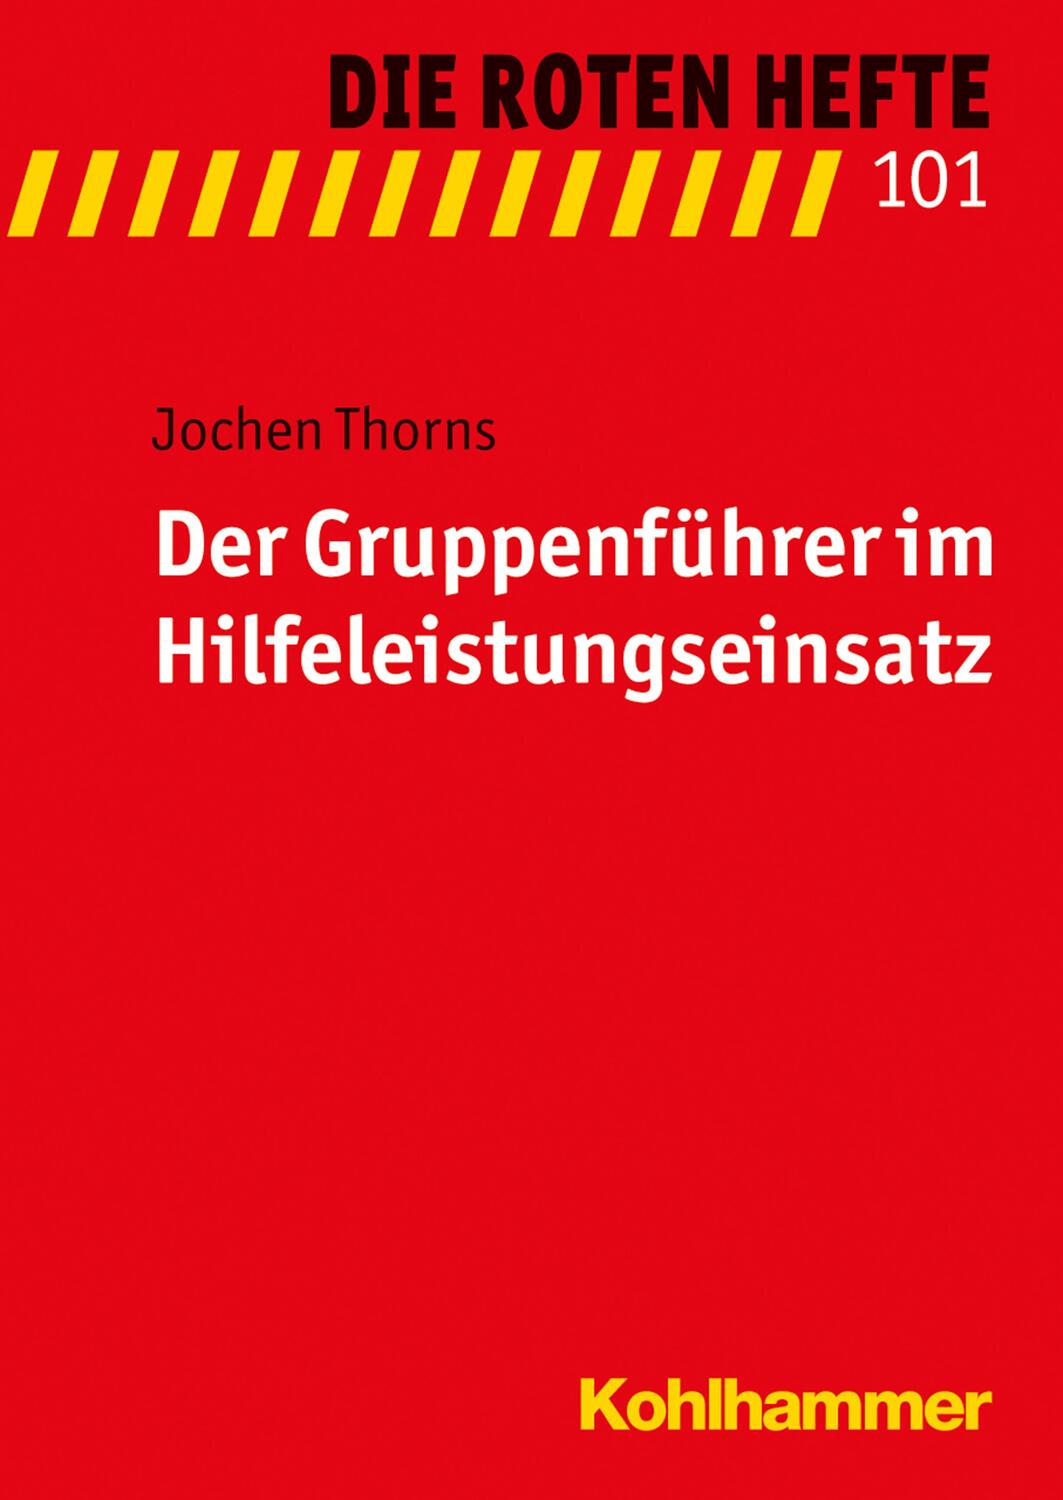 Der Gruppenführer im Hilfeleistungseinsatz - Thorns, Jochen